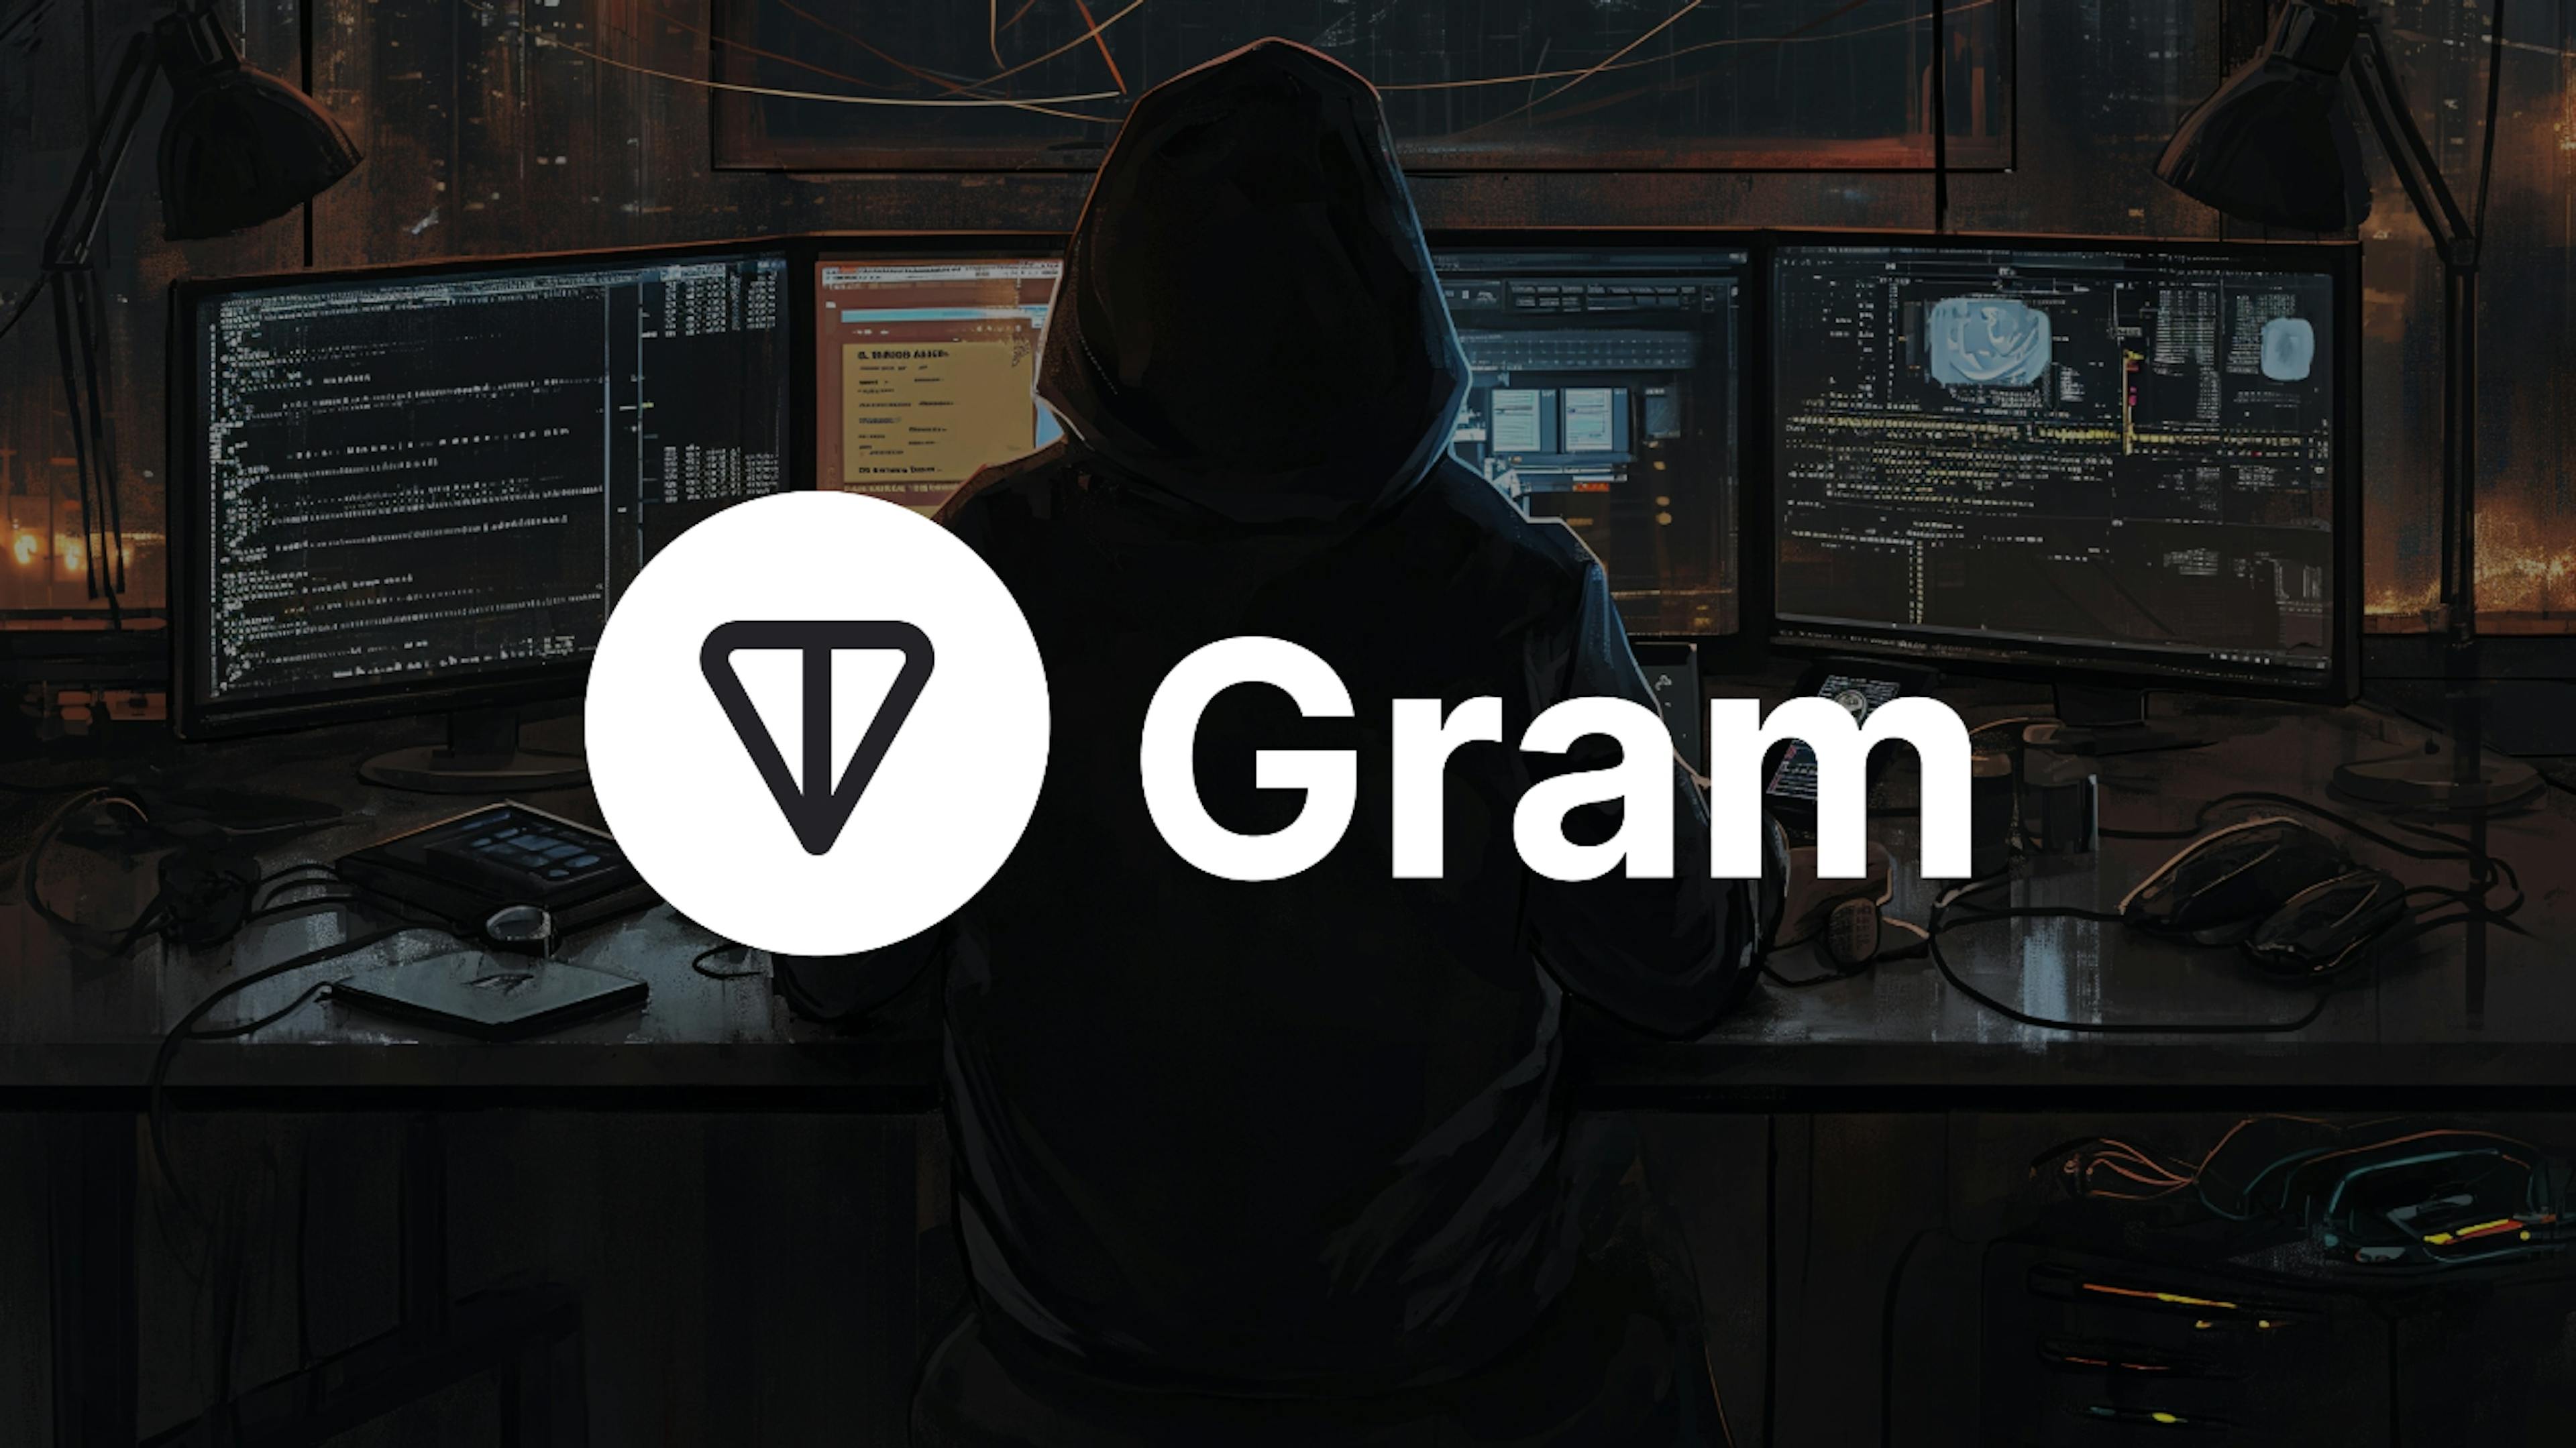 featured image - “Telegramdaki Yeni Bitcoin” GRAM'ın Fiyatı Lansmandan Sadece 3 Ay Sonra 28.000 Kat Arttı